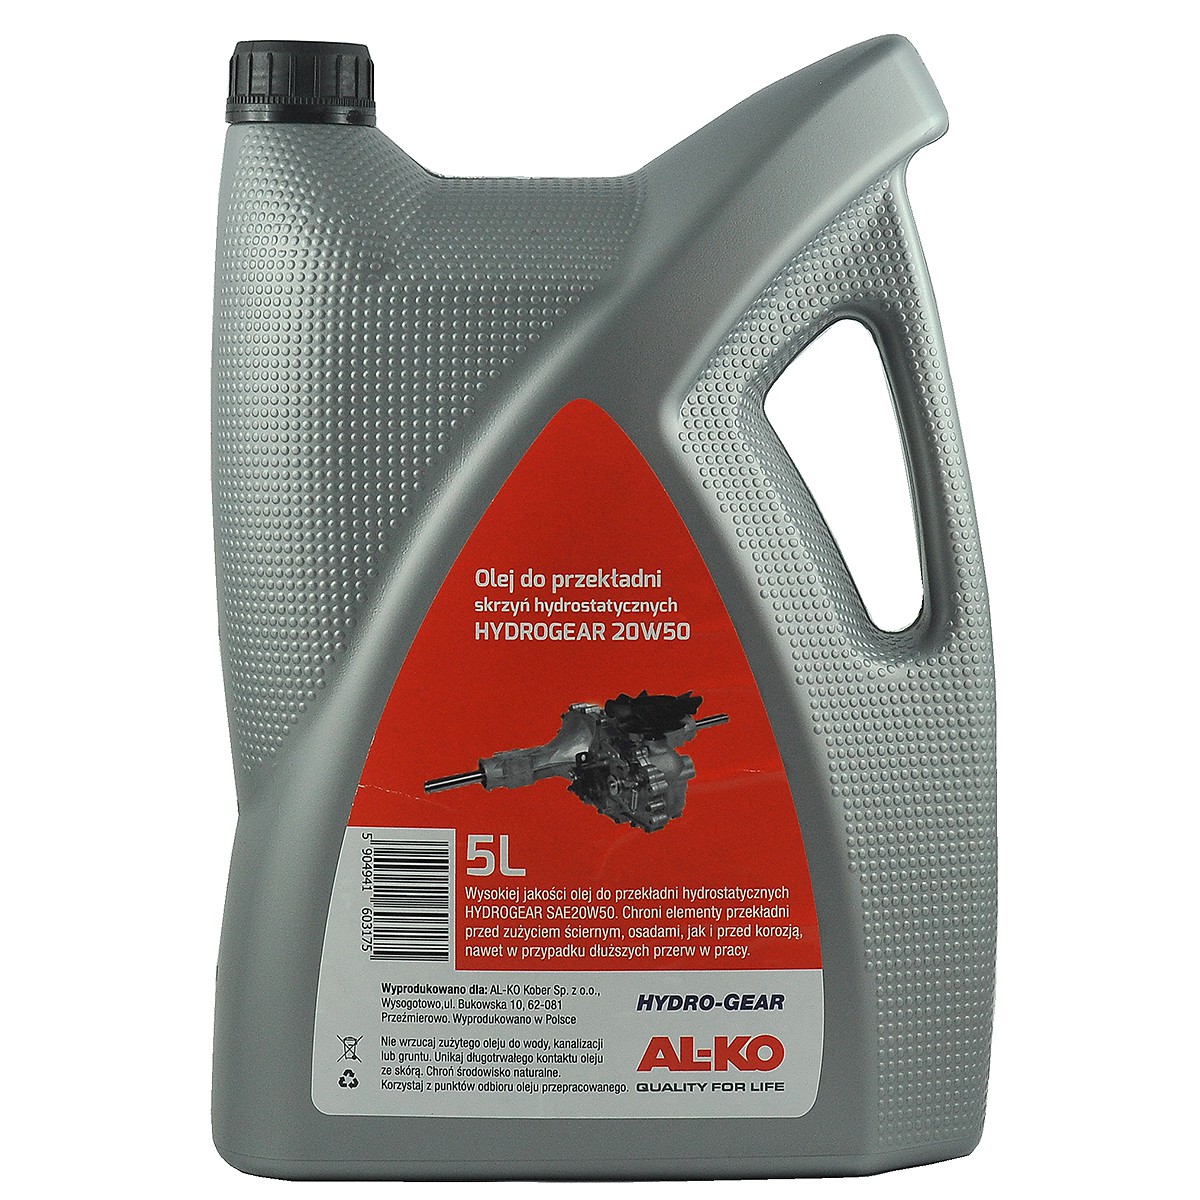 Hydrostatický převodový olej / HYDRO-GEAR AL-KO / 20W50 / 5L